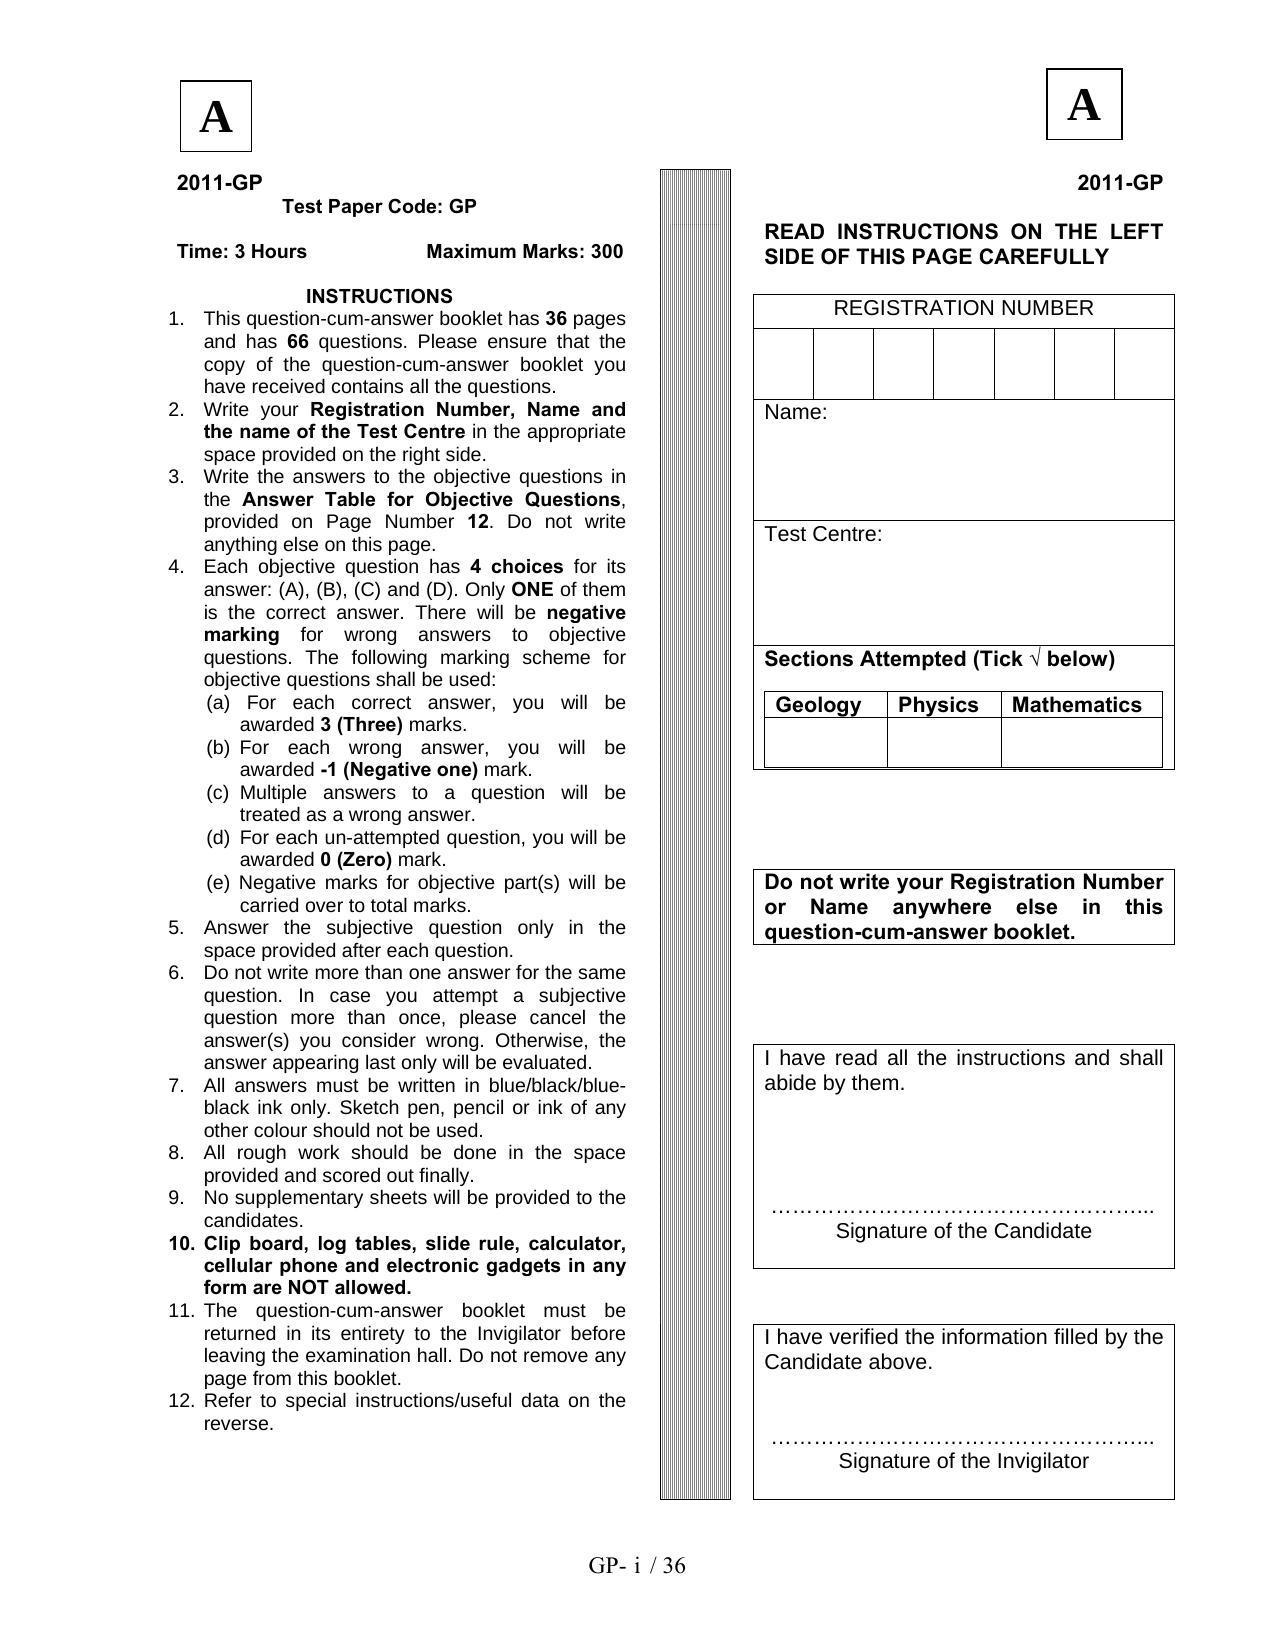 JAM 2011: GP Question Paper - Page 1